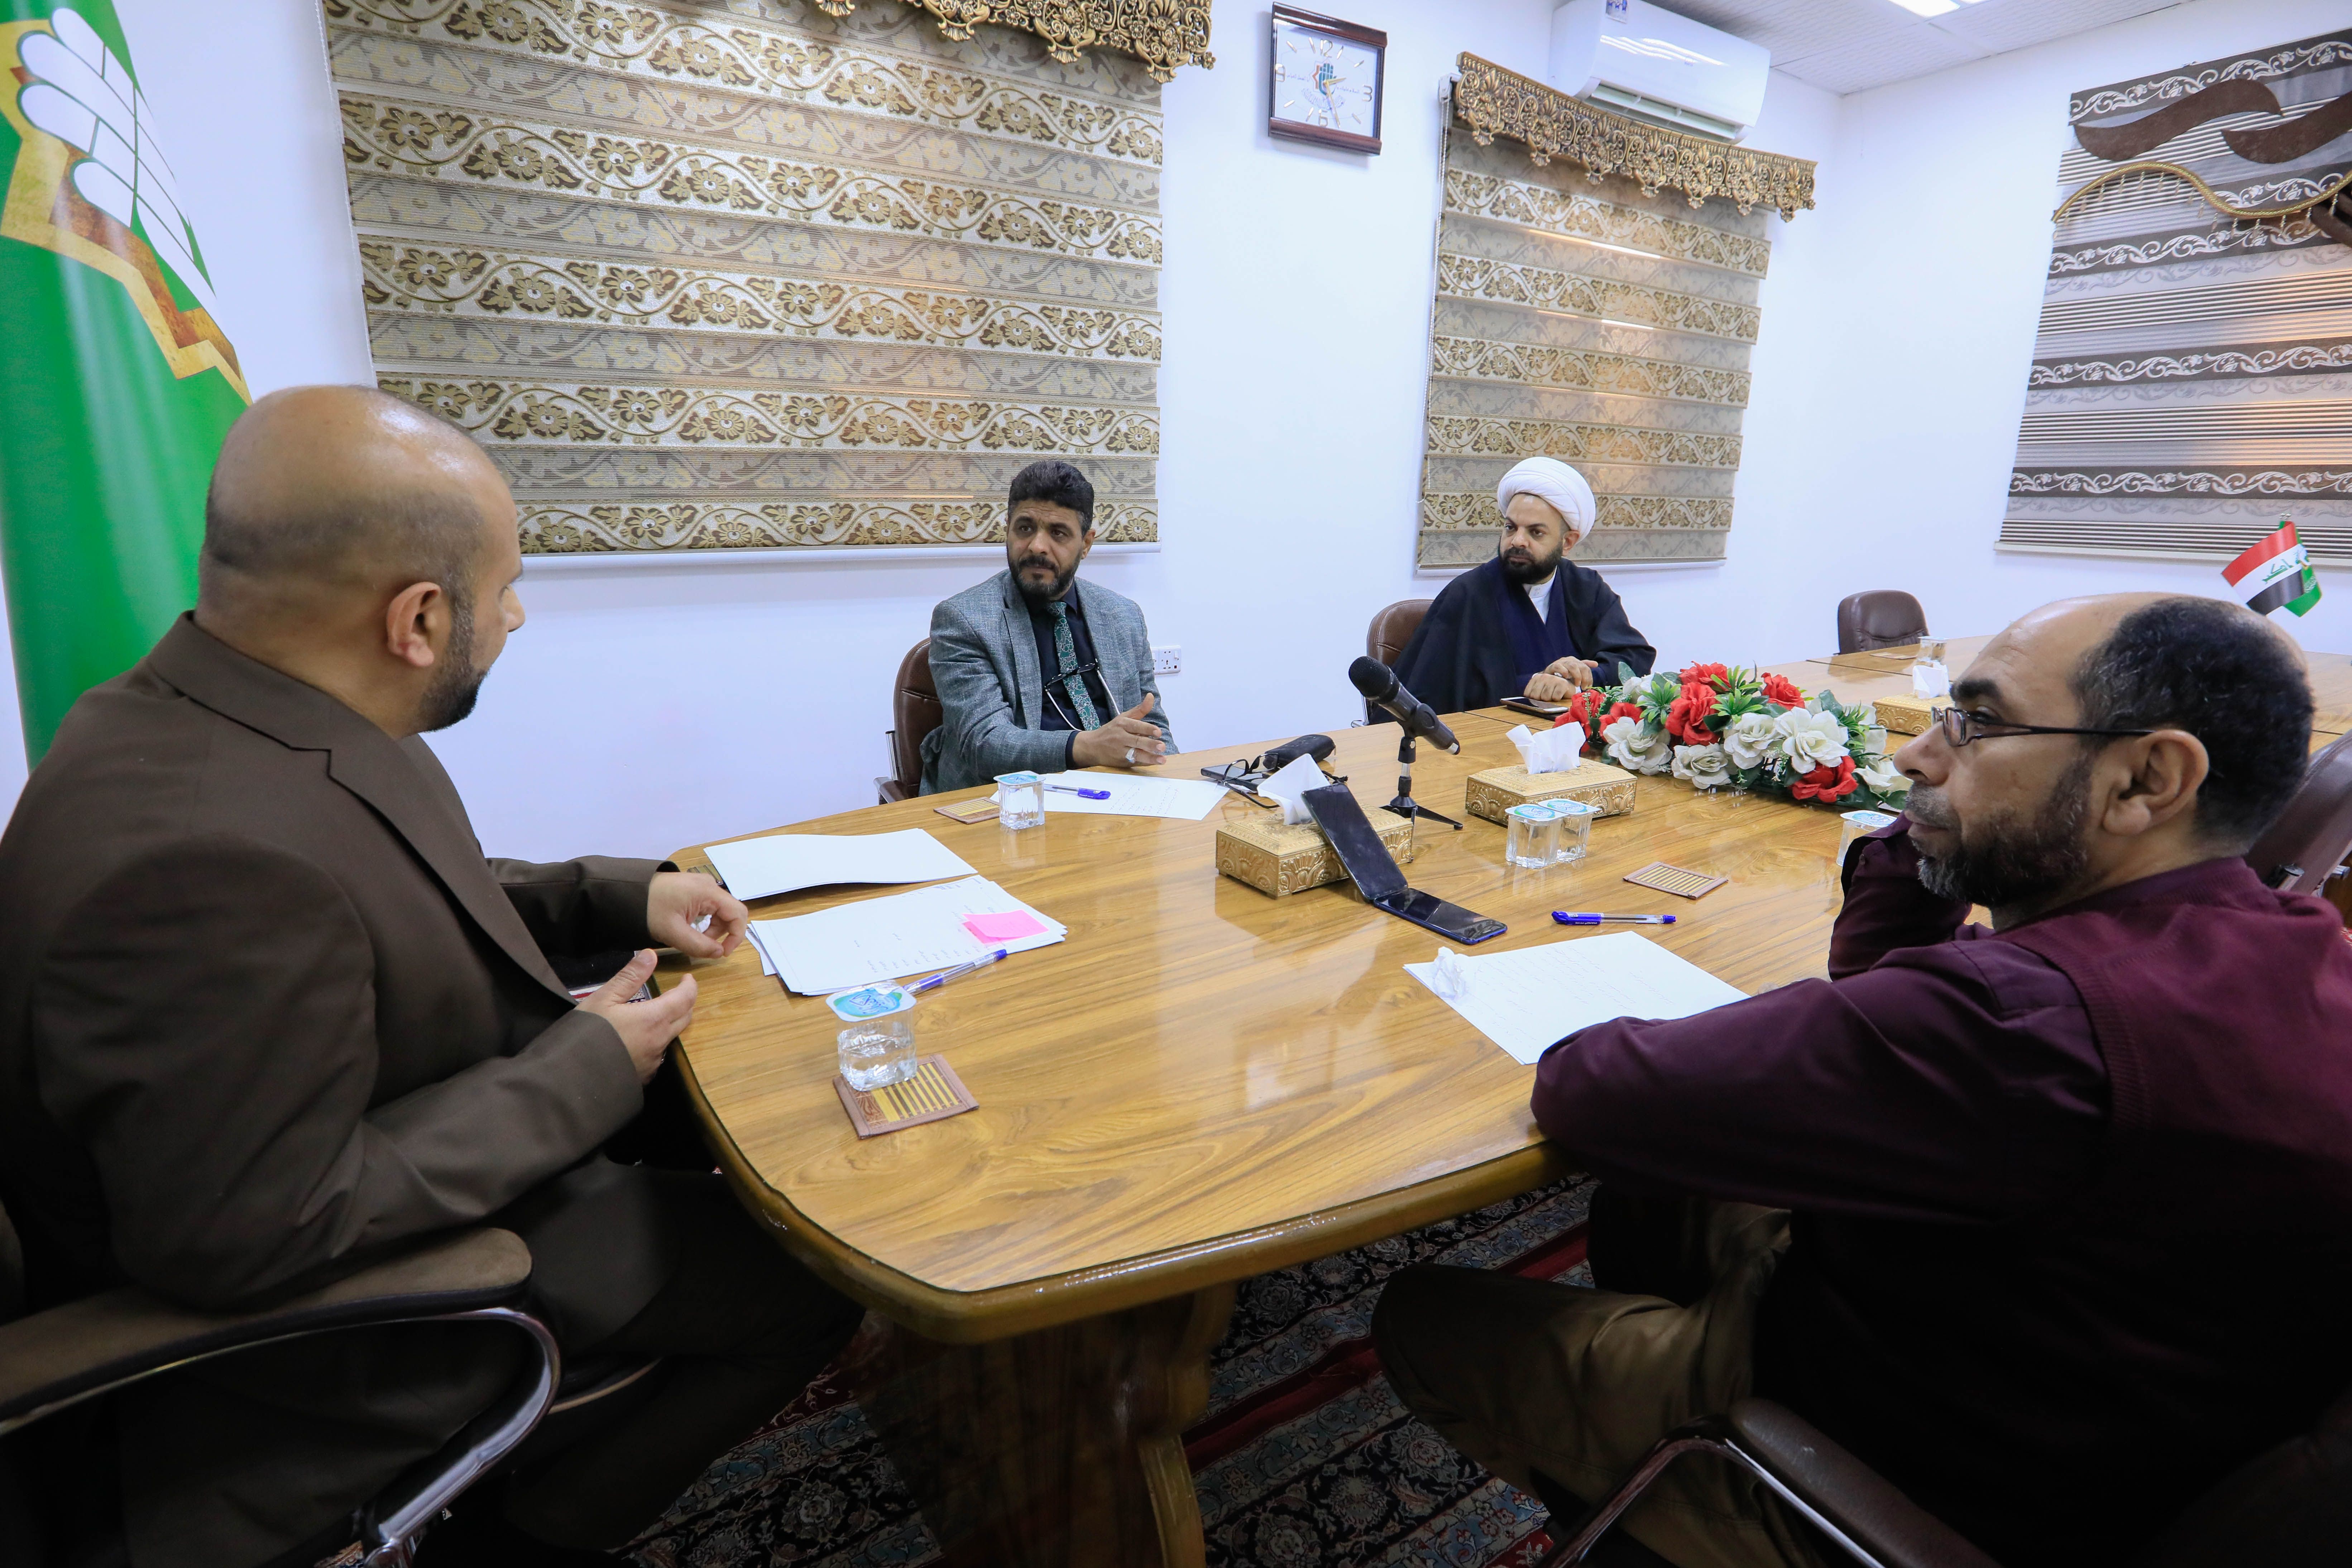 معهد القرآن الكريم يعلن عن انطلاق مشروع إعداد المناهج القرآنية